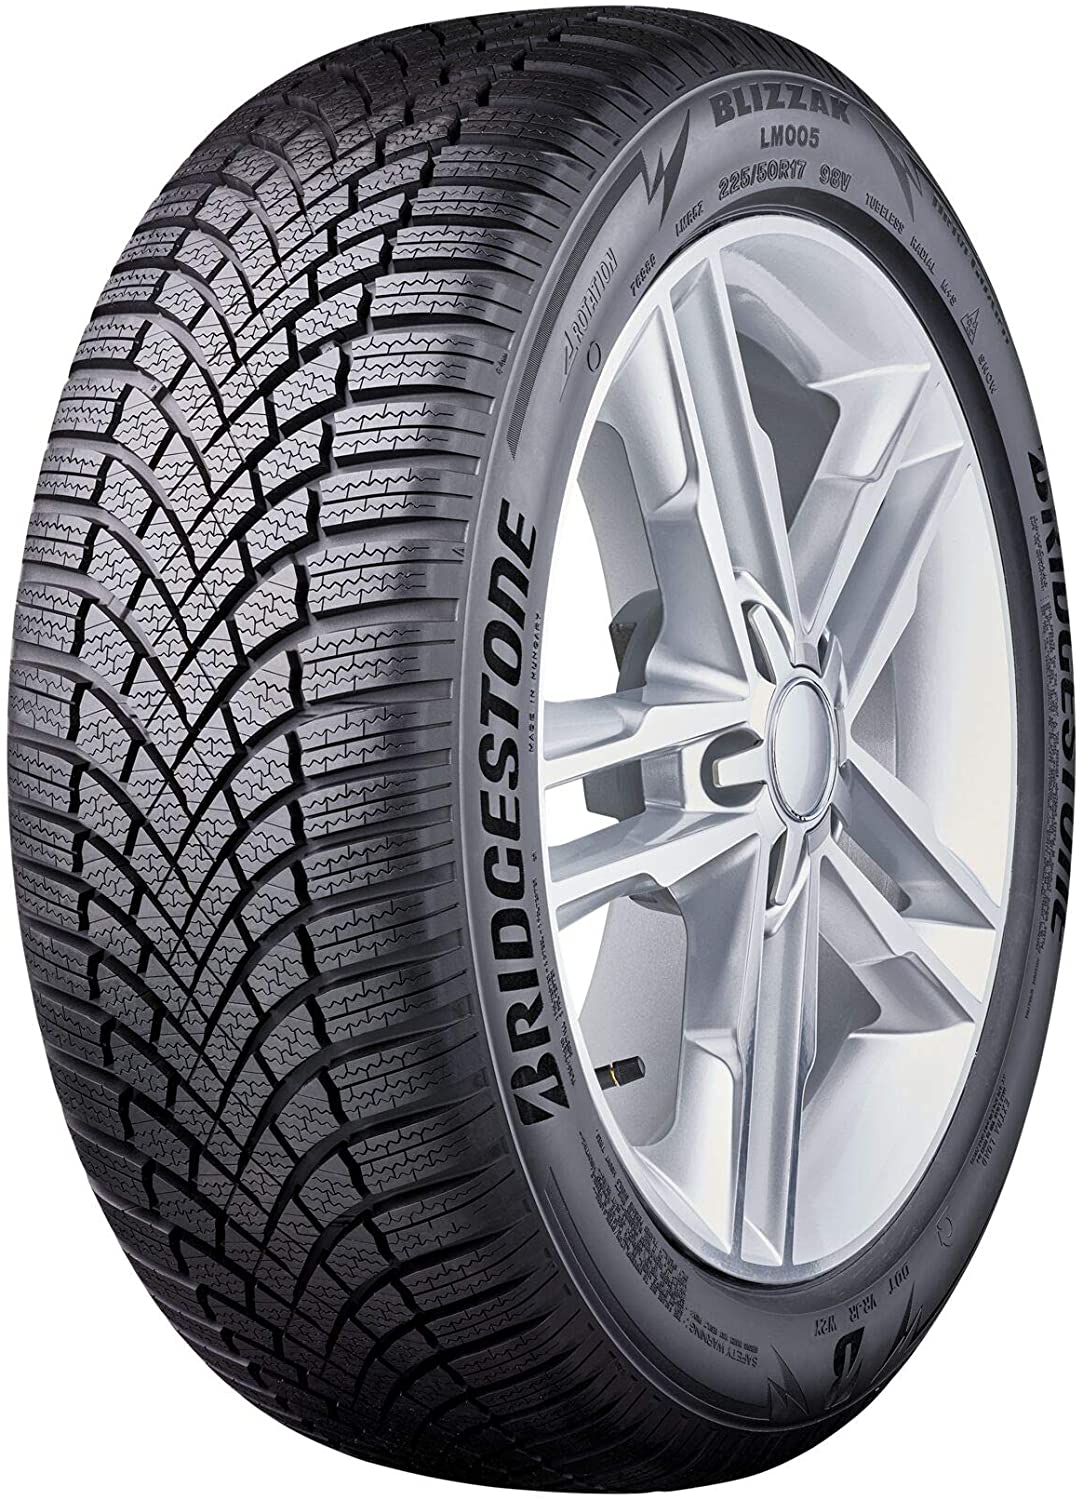 Bridgestone Blizzak LM005 - Reviews Tyre Tests and